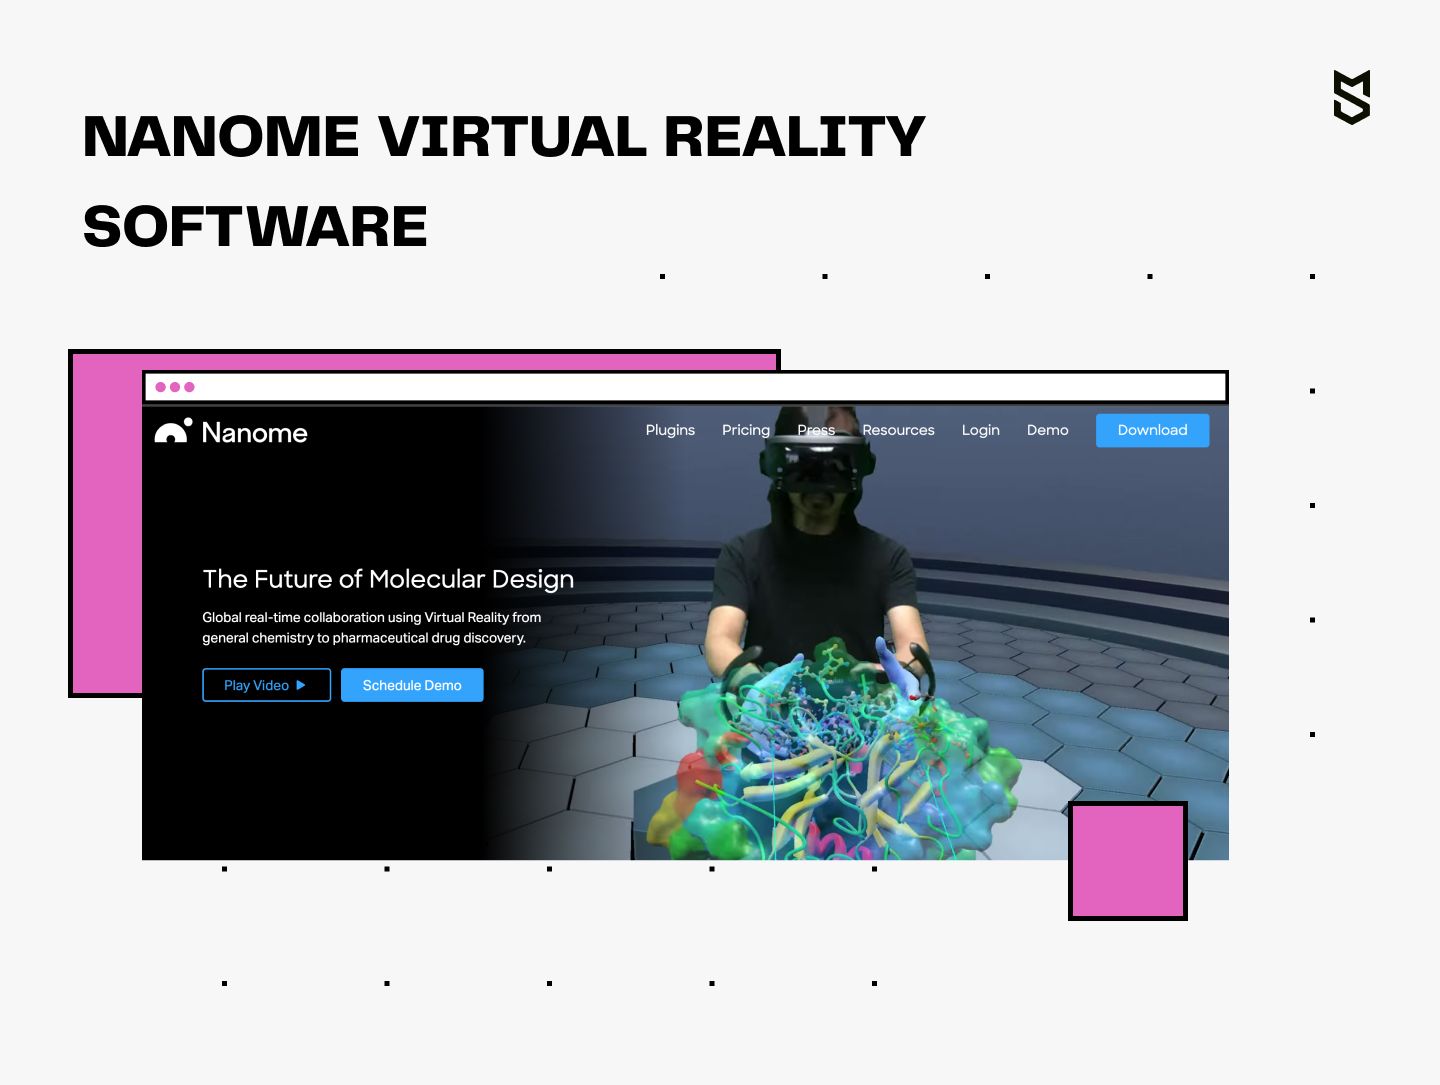 Nanome virtual reality software